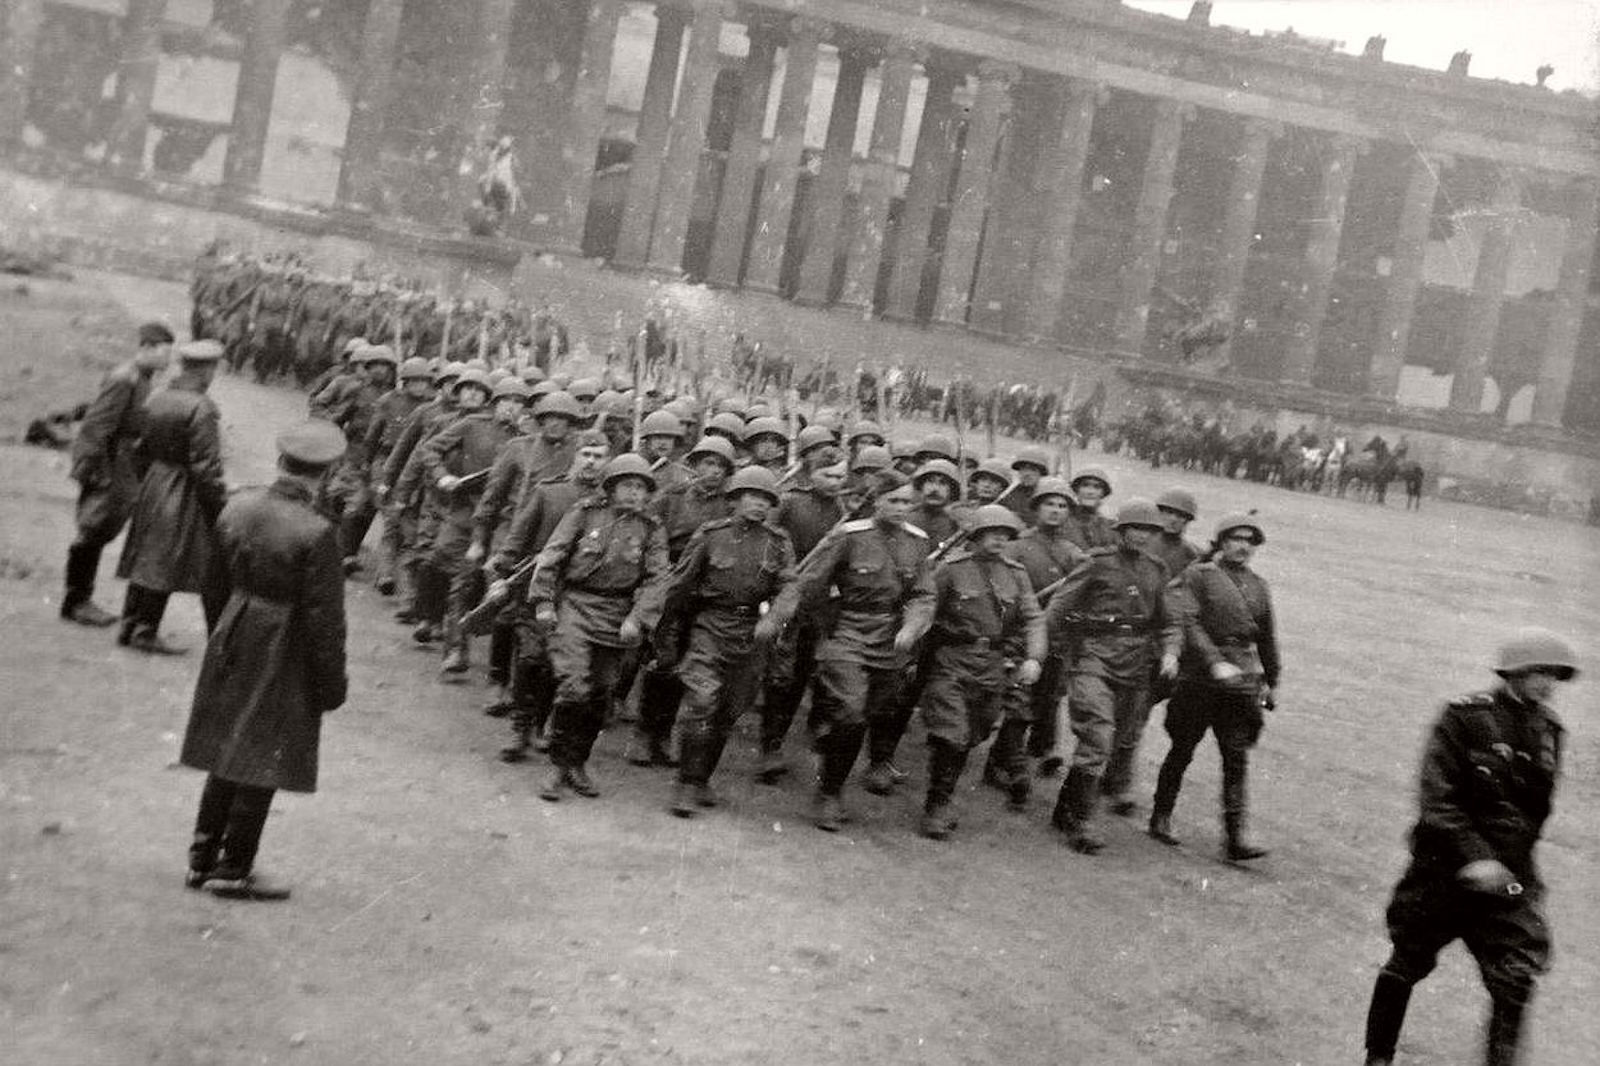 Берлин 5 мая какой год. Парад советских солдат в Берлине 1945. Советские солдаты в Берлине 1945 года. Парад Победы в Берлине 4 мая 1945 года. Советская армия в Берлине 1945.